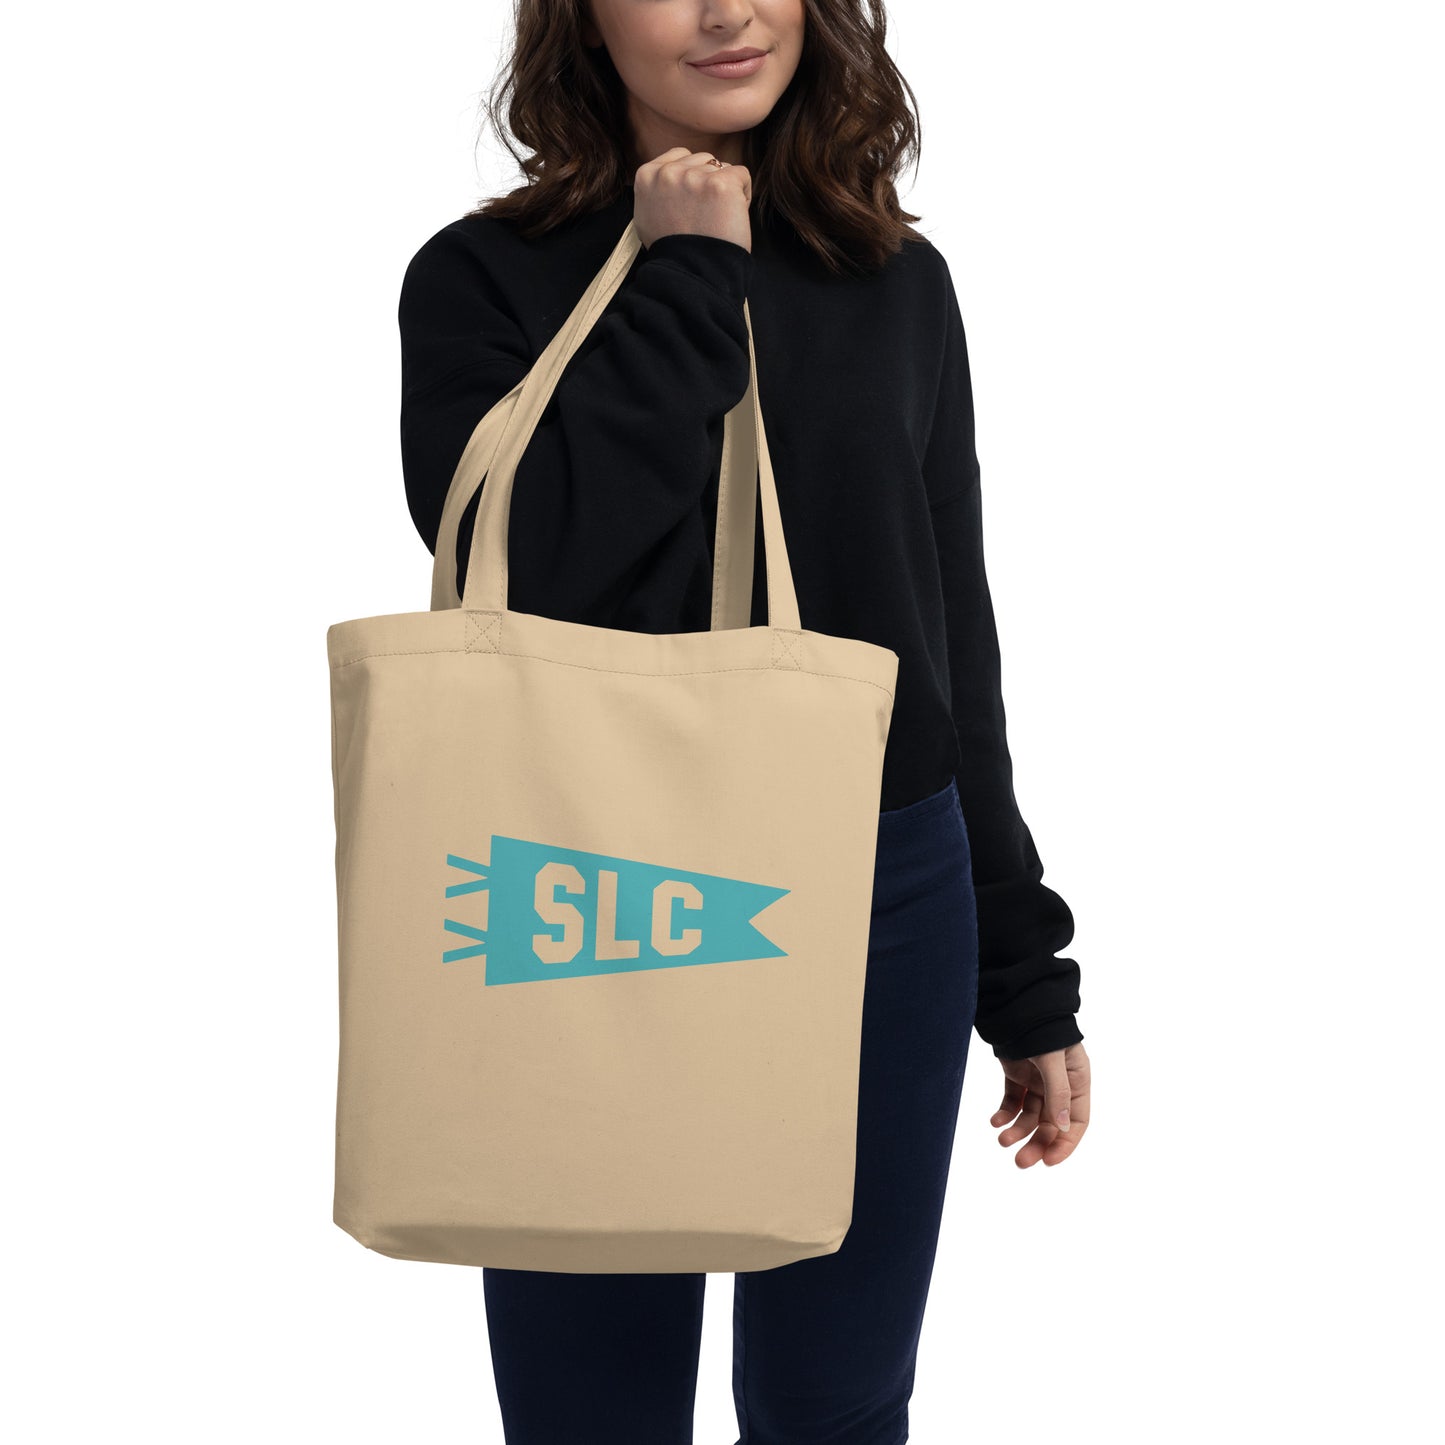 Cool Travel Gift Organic Tote Bag - Viking Blue • SLC Salt Lake City • YHM Designs - Image 03